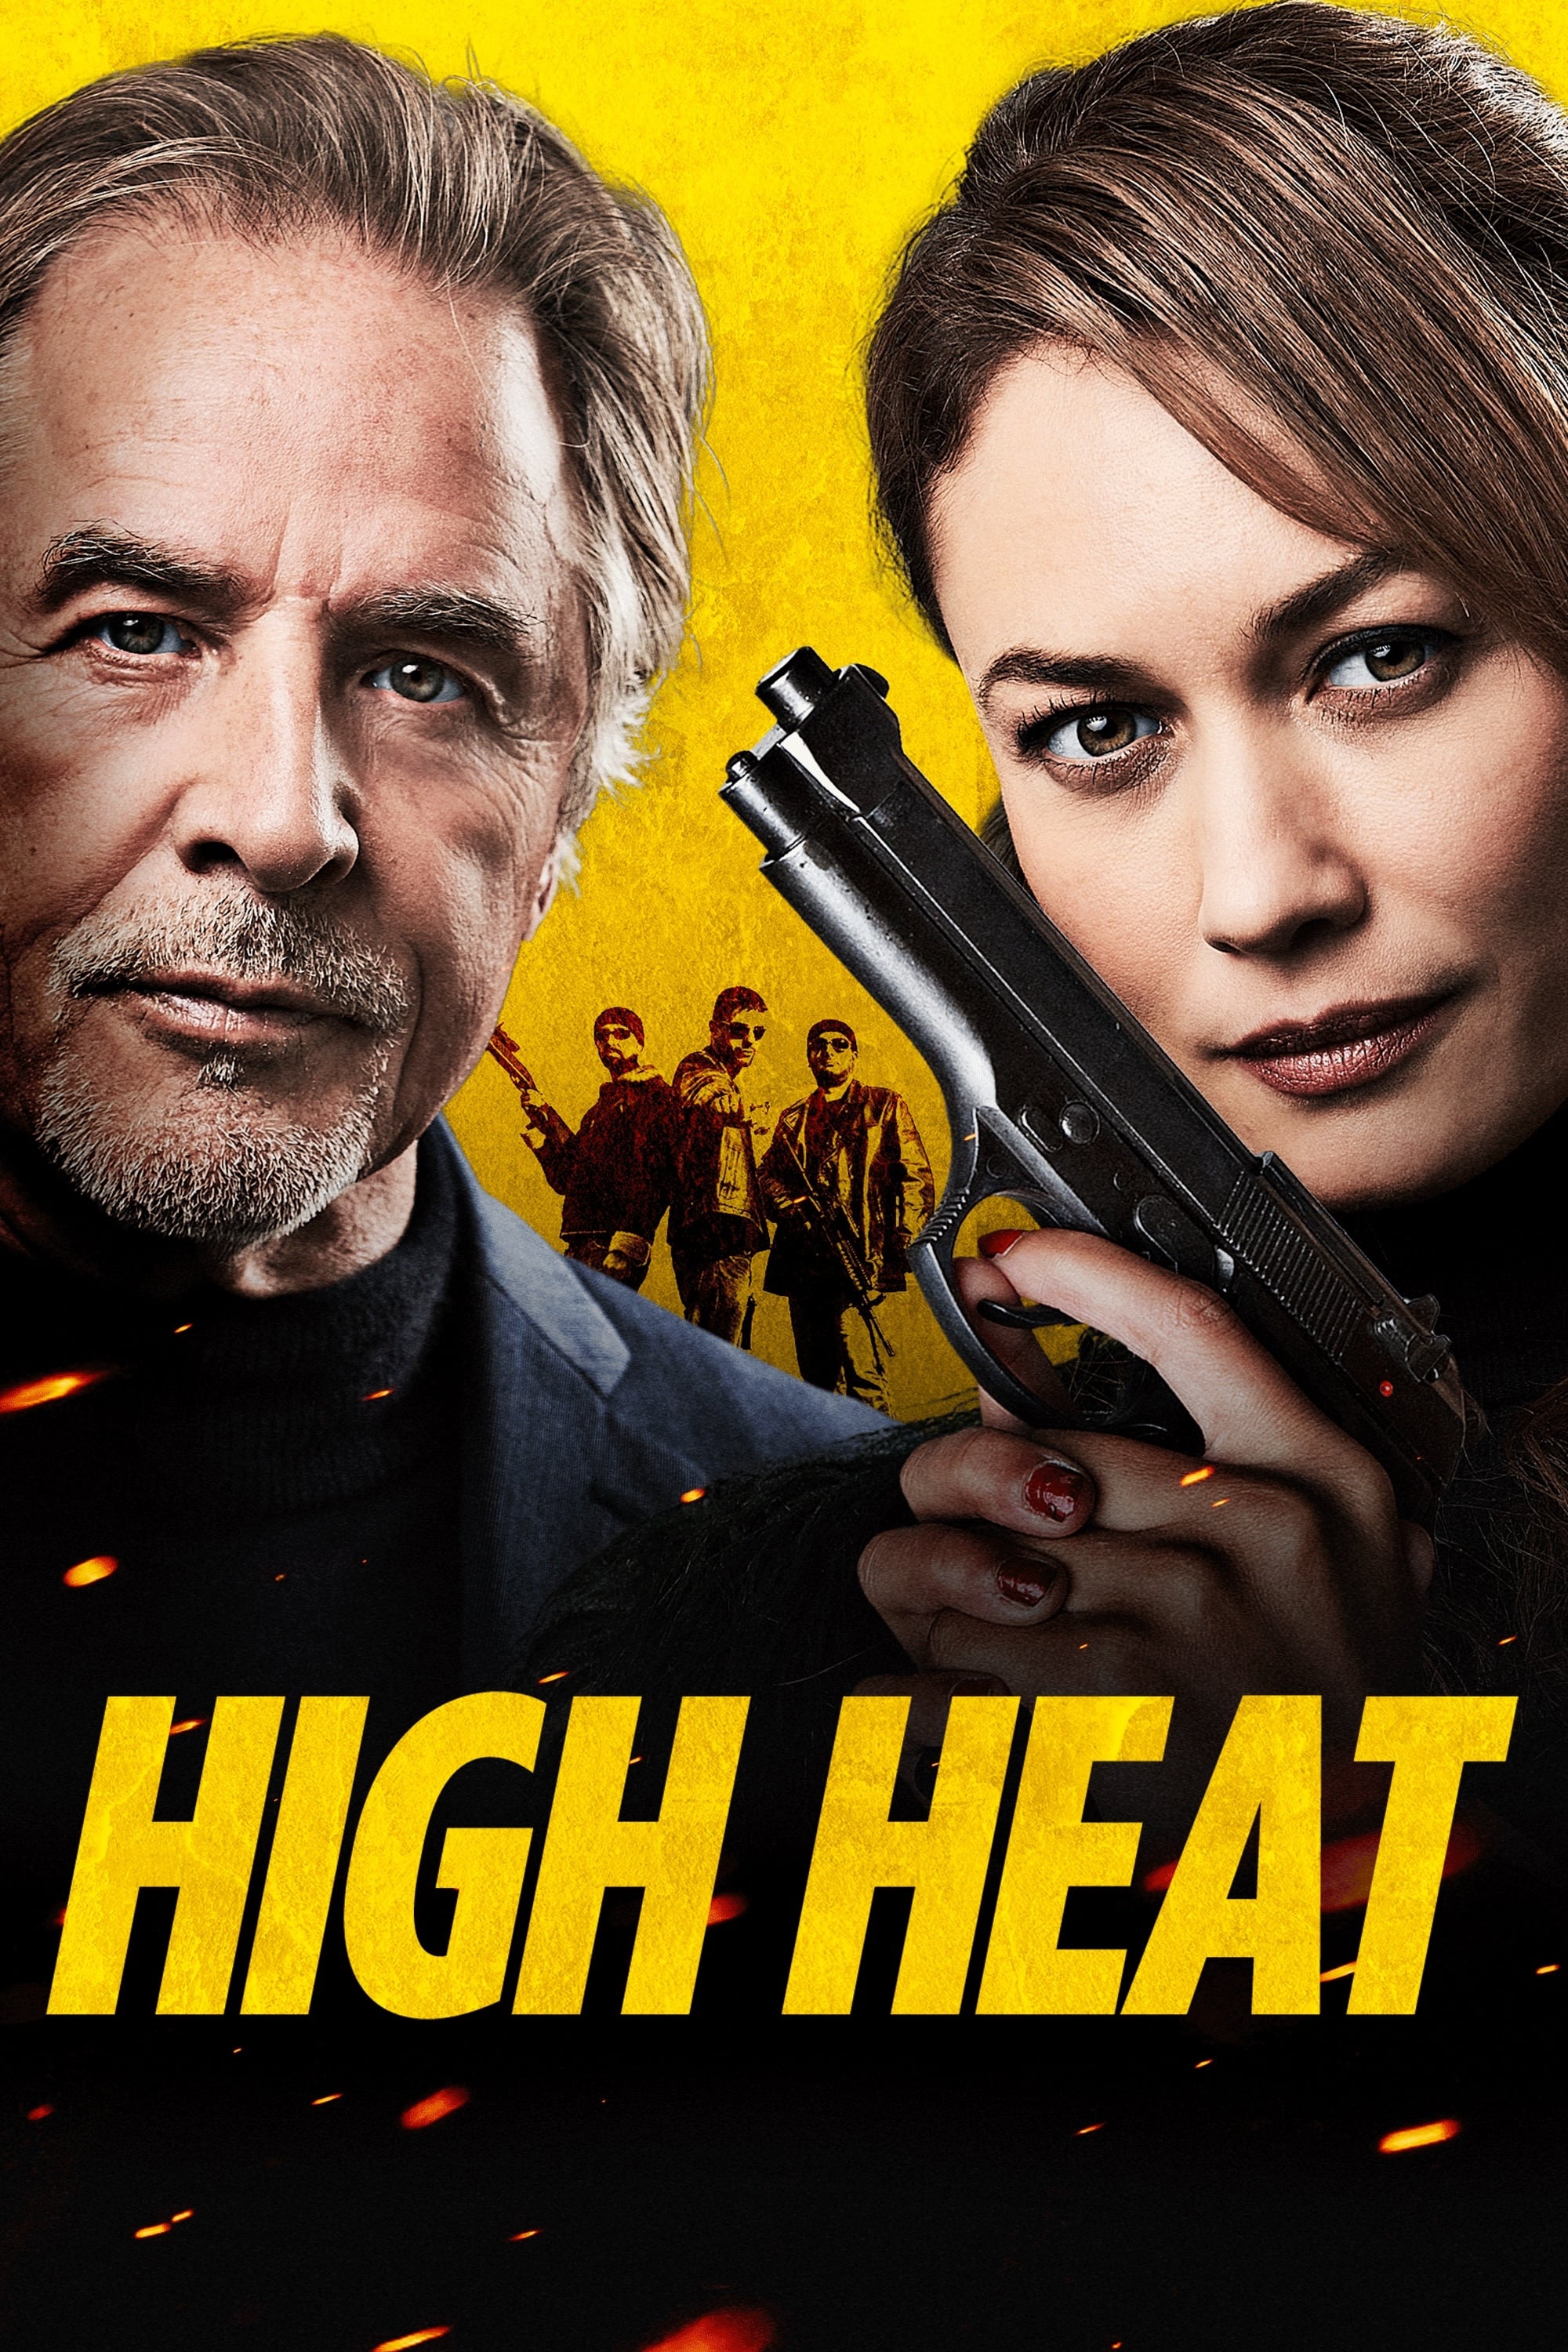 High Heat poster